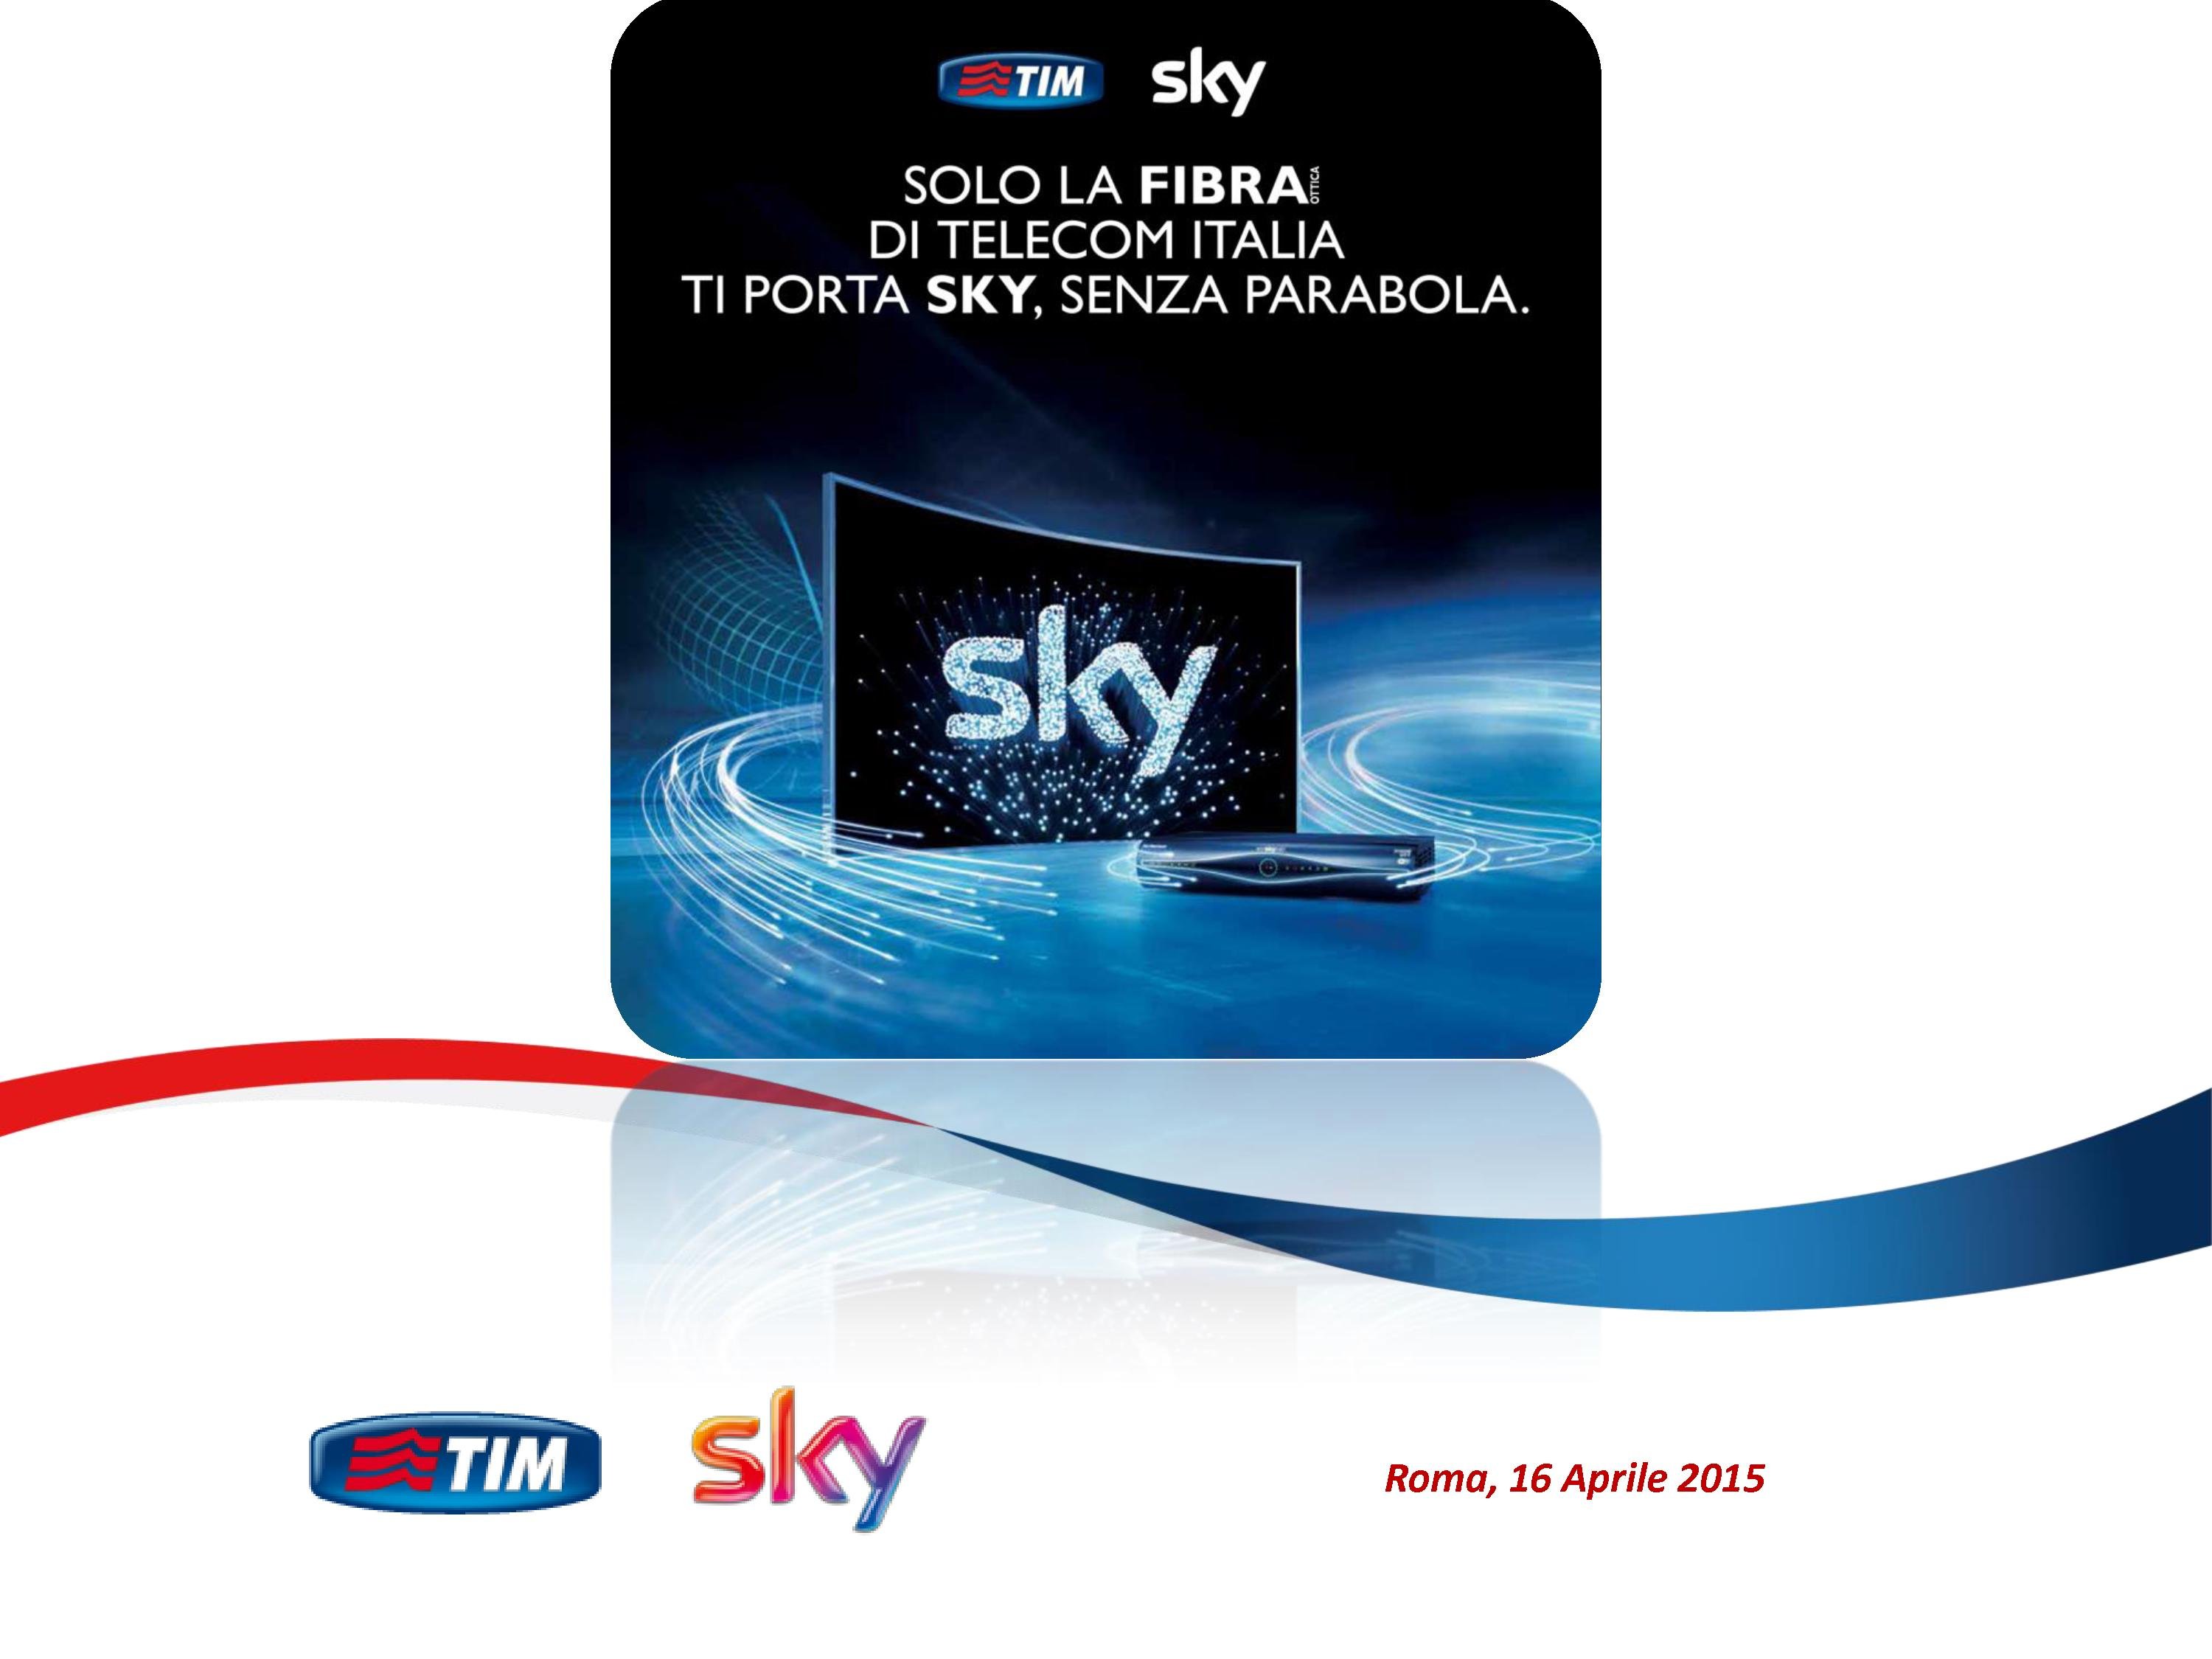 Nasce #TIMSkyTv, tutti i contenuti Sky sulle reti in fibra ottica e ADSL TIM